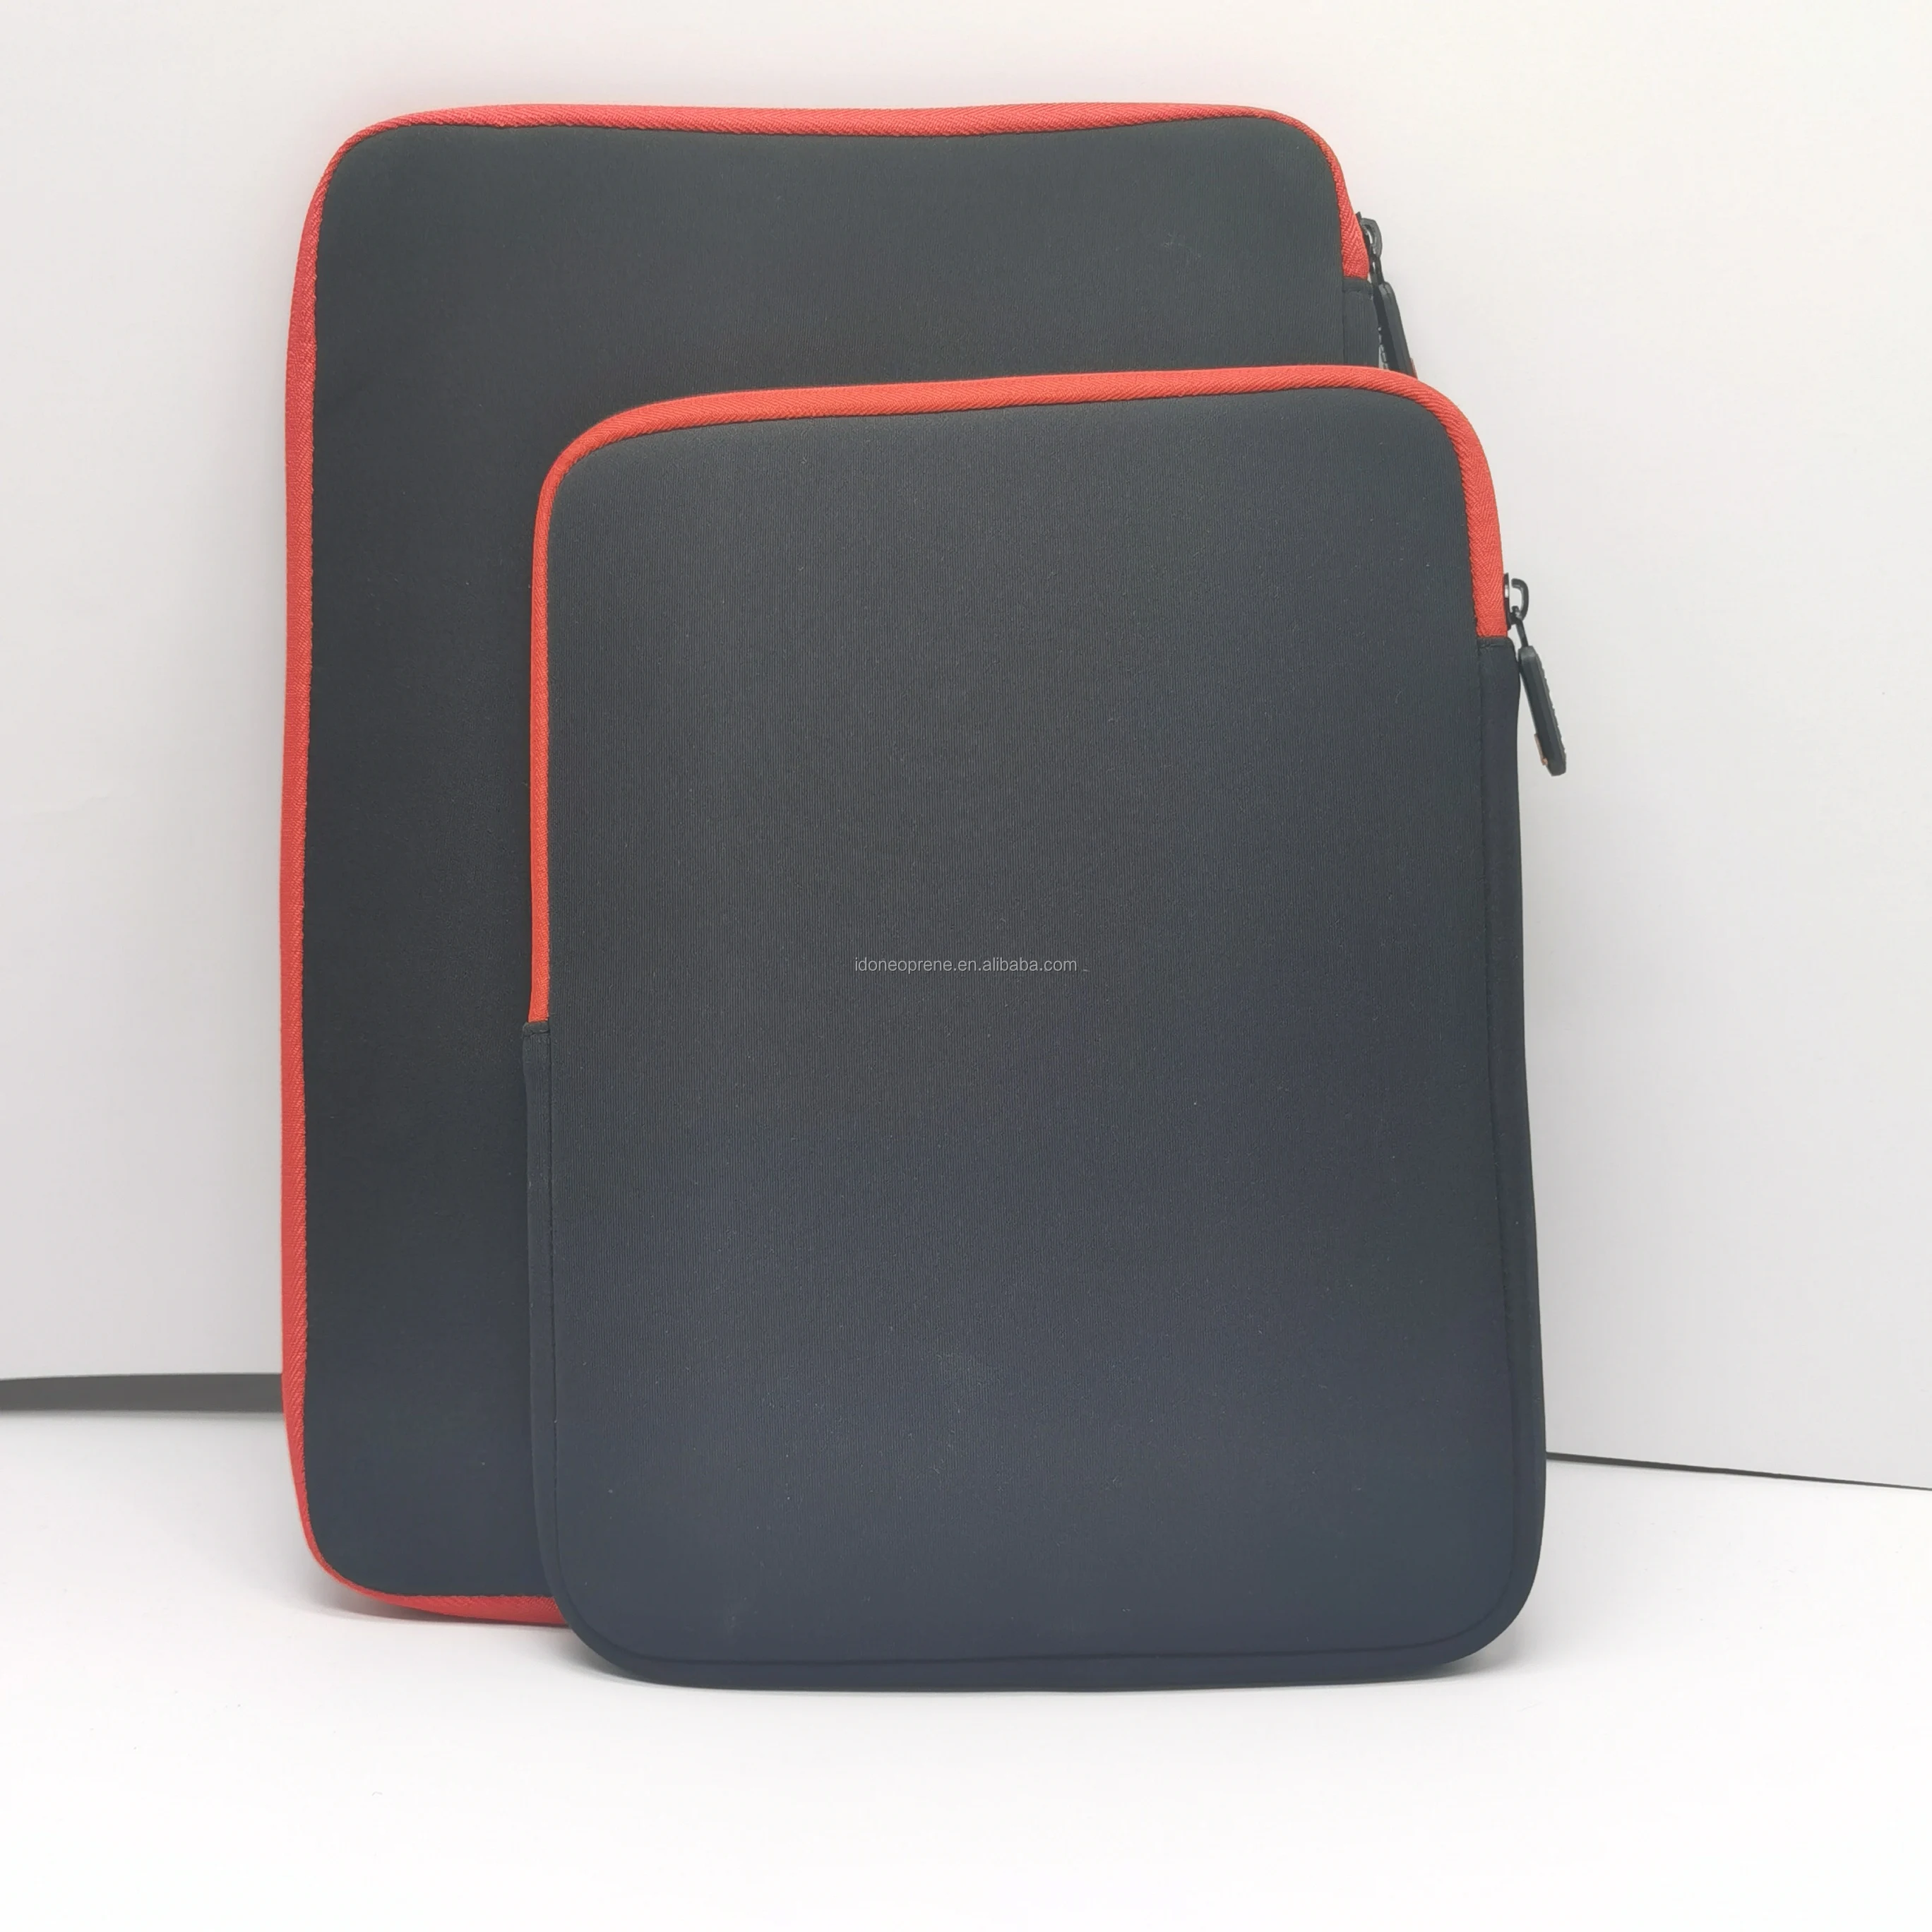 Personalized Neoprene Laptop Case